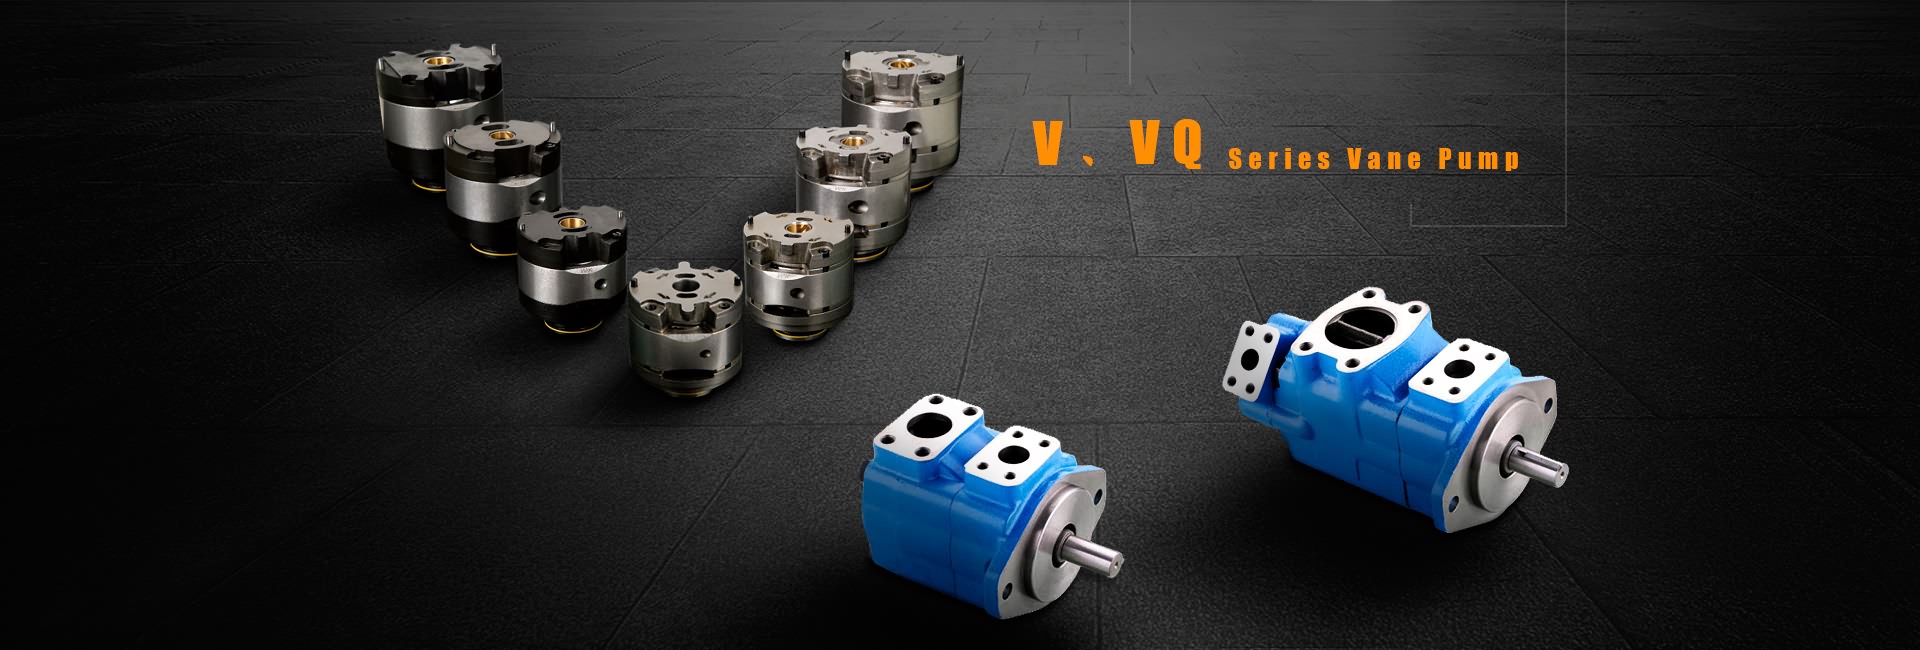 V፣VQ Series Vane Pump